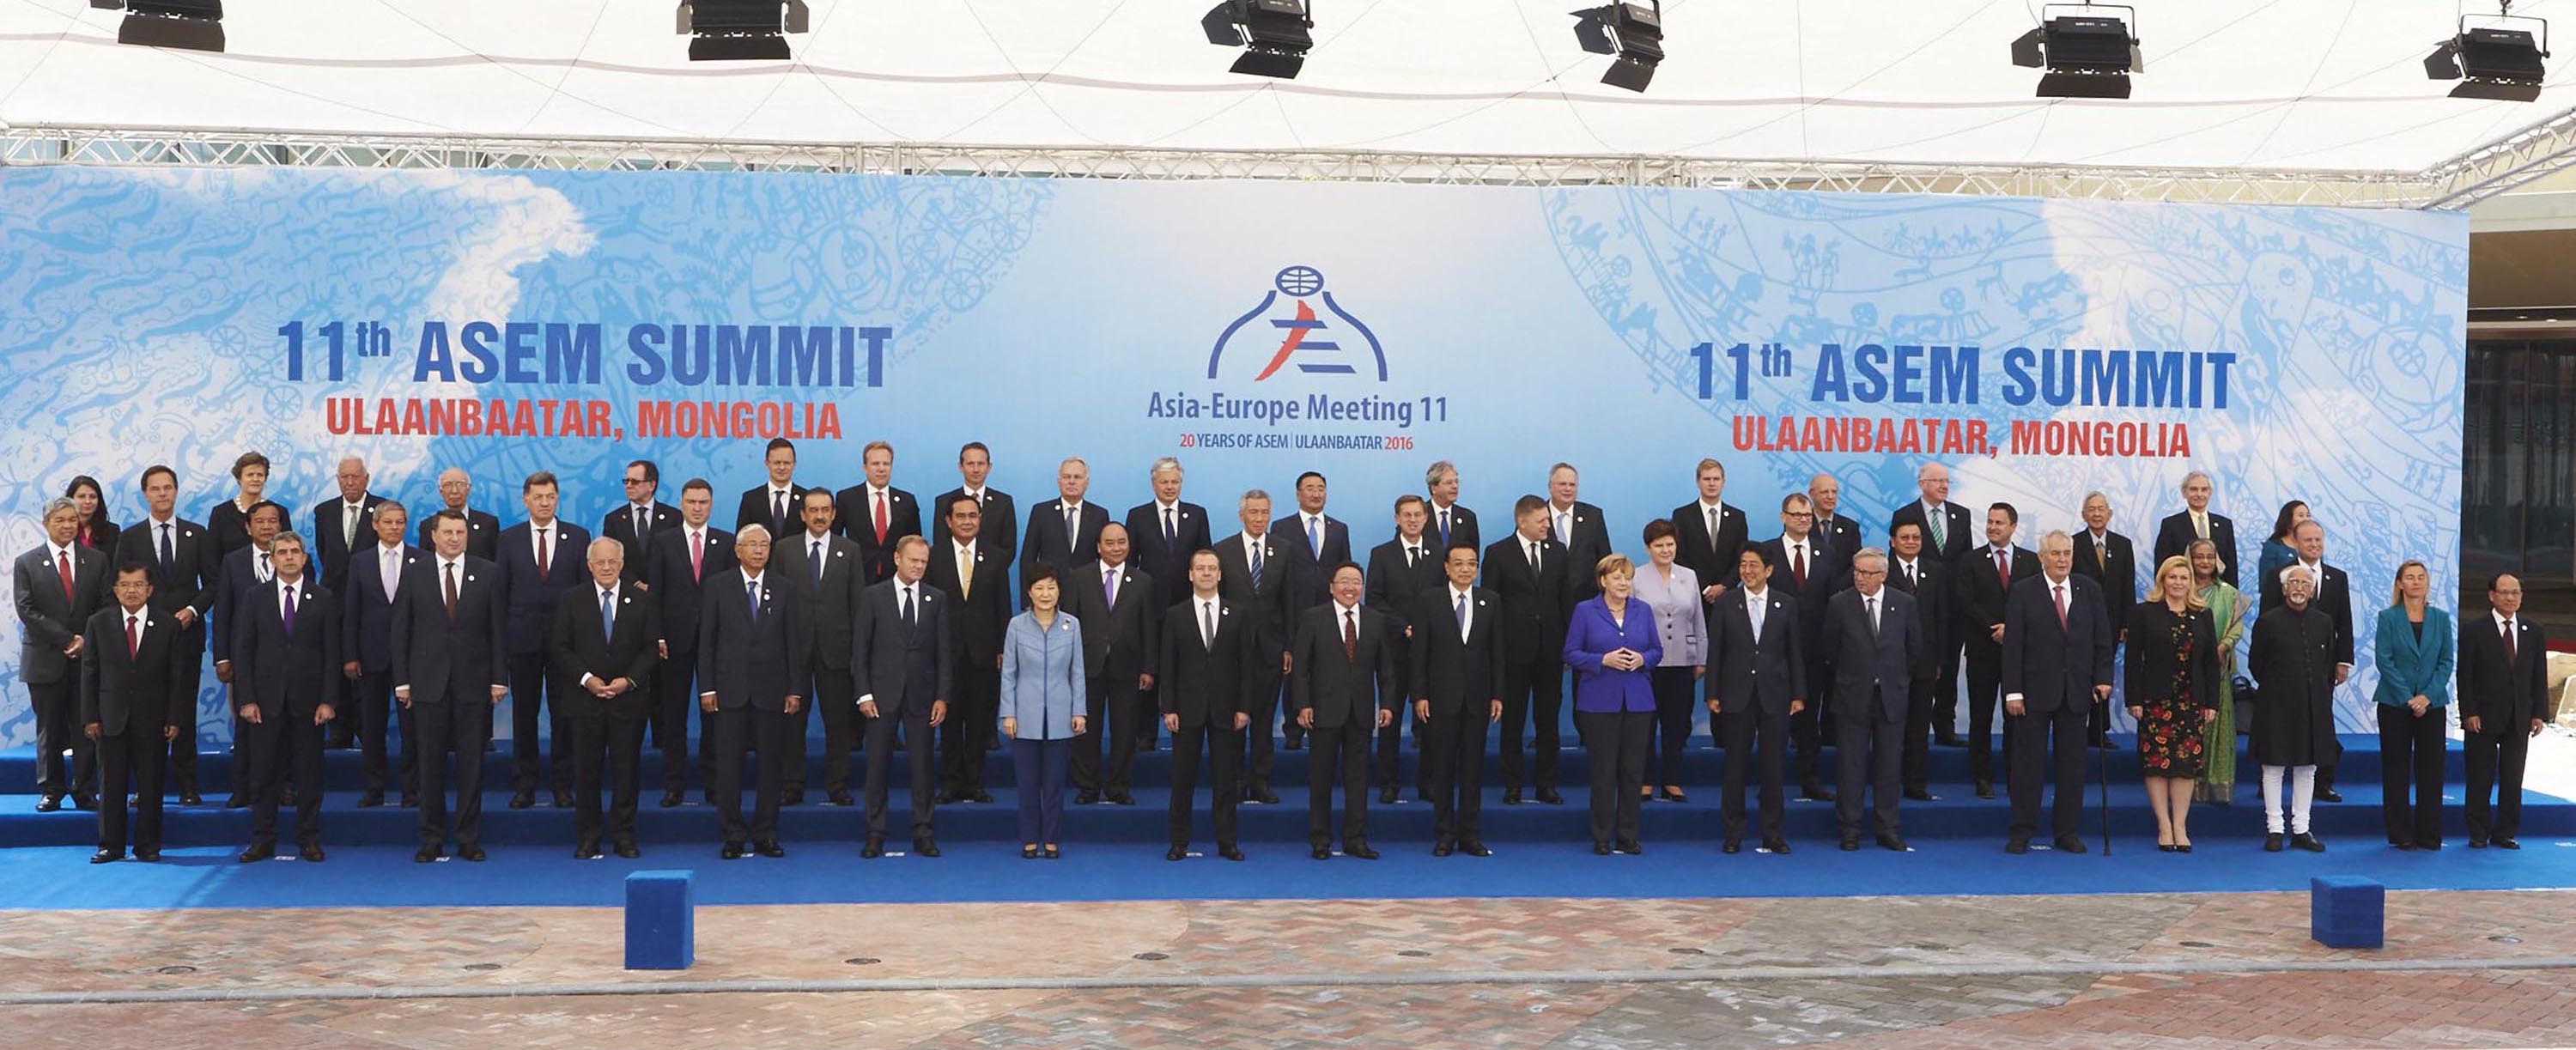 Работно посещение в Монголия за участие в 11-ата среща на държавните и правителствени ръководители на страните-членки на Азиатско-европейския форум (АСЕМ) в Улан Батор.